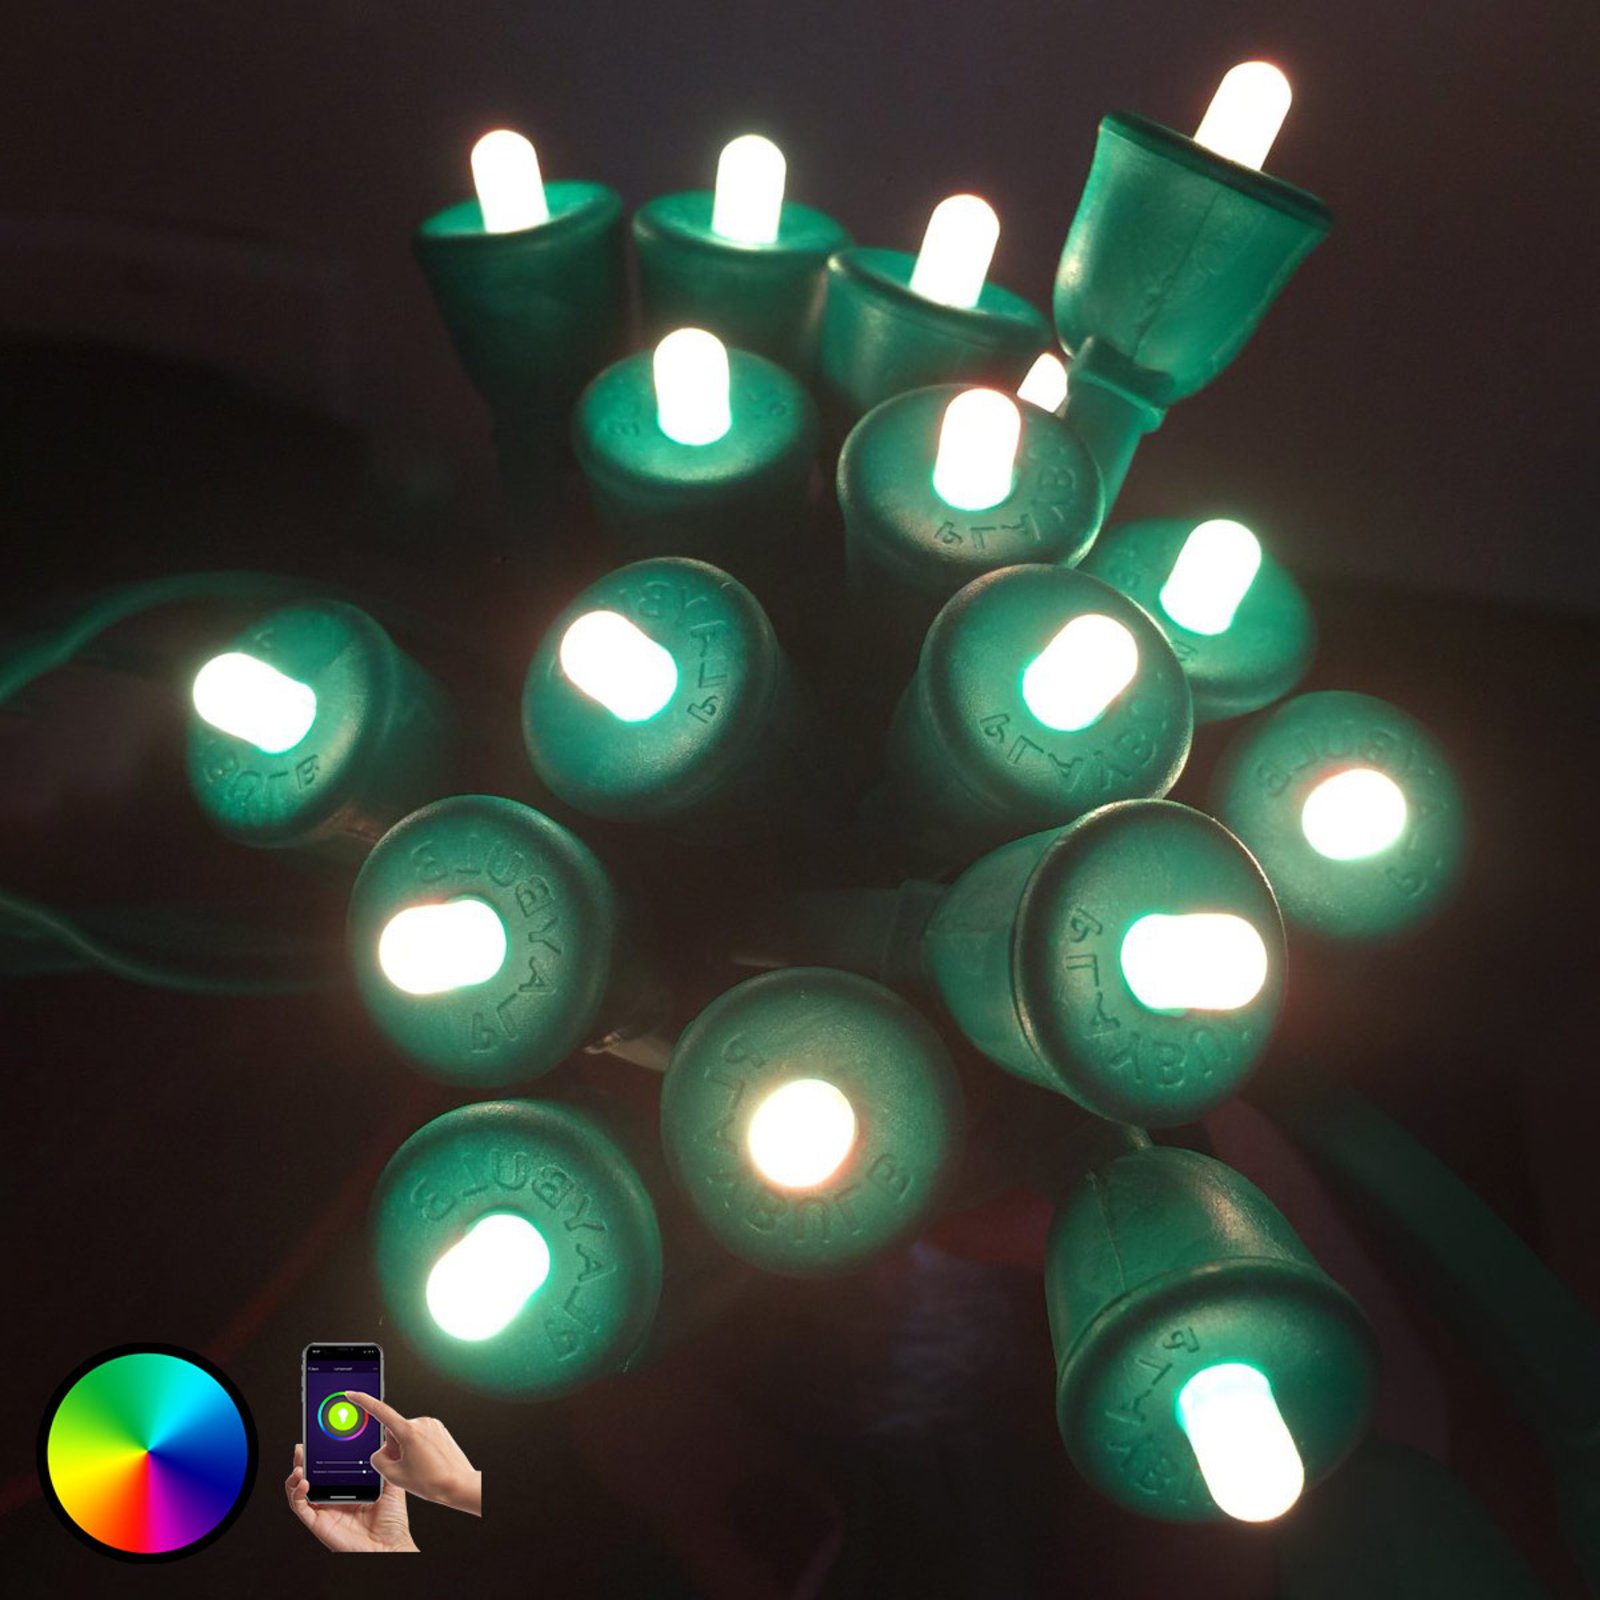 MiPow Playbulb String łańcuch LED 15 m, zielony